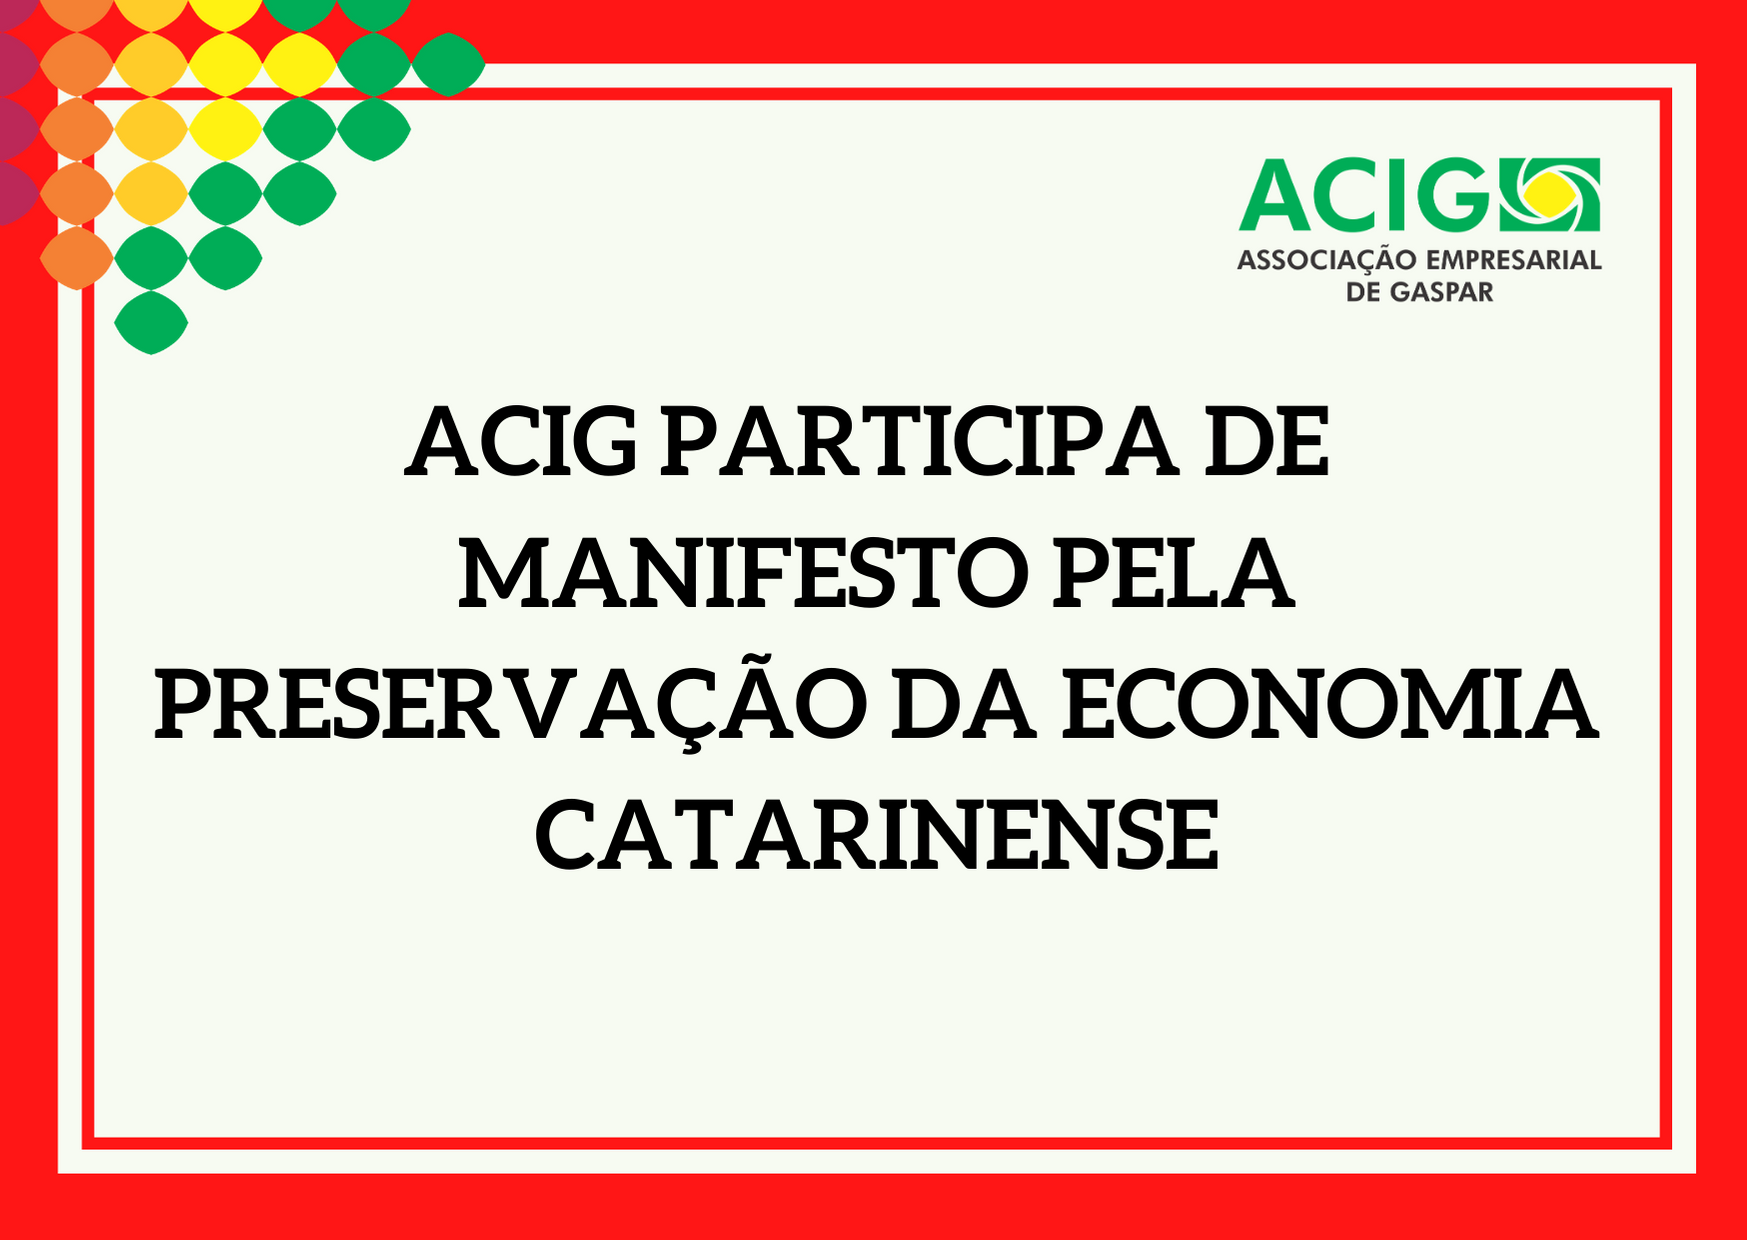 ACIG participa de manifesto pela preservação da economia catarinense